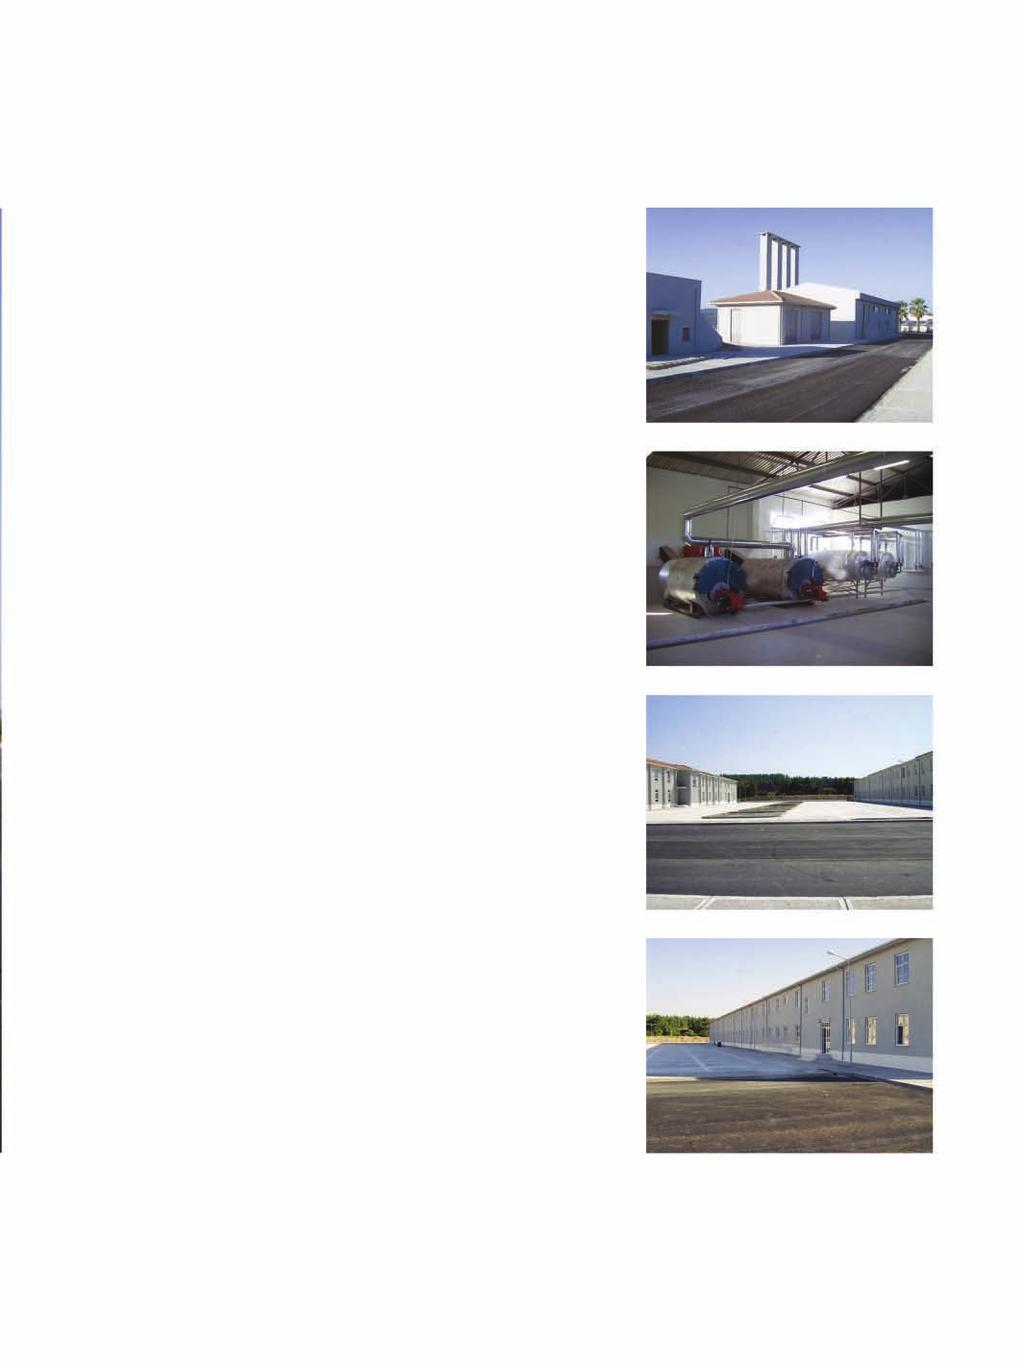 Çanakkale Deniz Komutanlığı Kışla Binası Çanakkale Naval Command Quarters Building Projenin Adı: Çanakkale Deniz Komutanlığı Kışla Binası Proje Açıklaması: 35.000 m 2 saha üzerine 25.